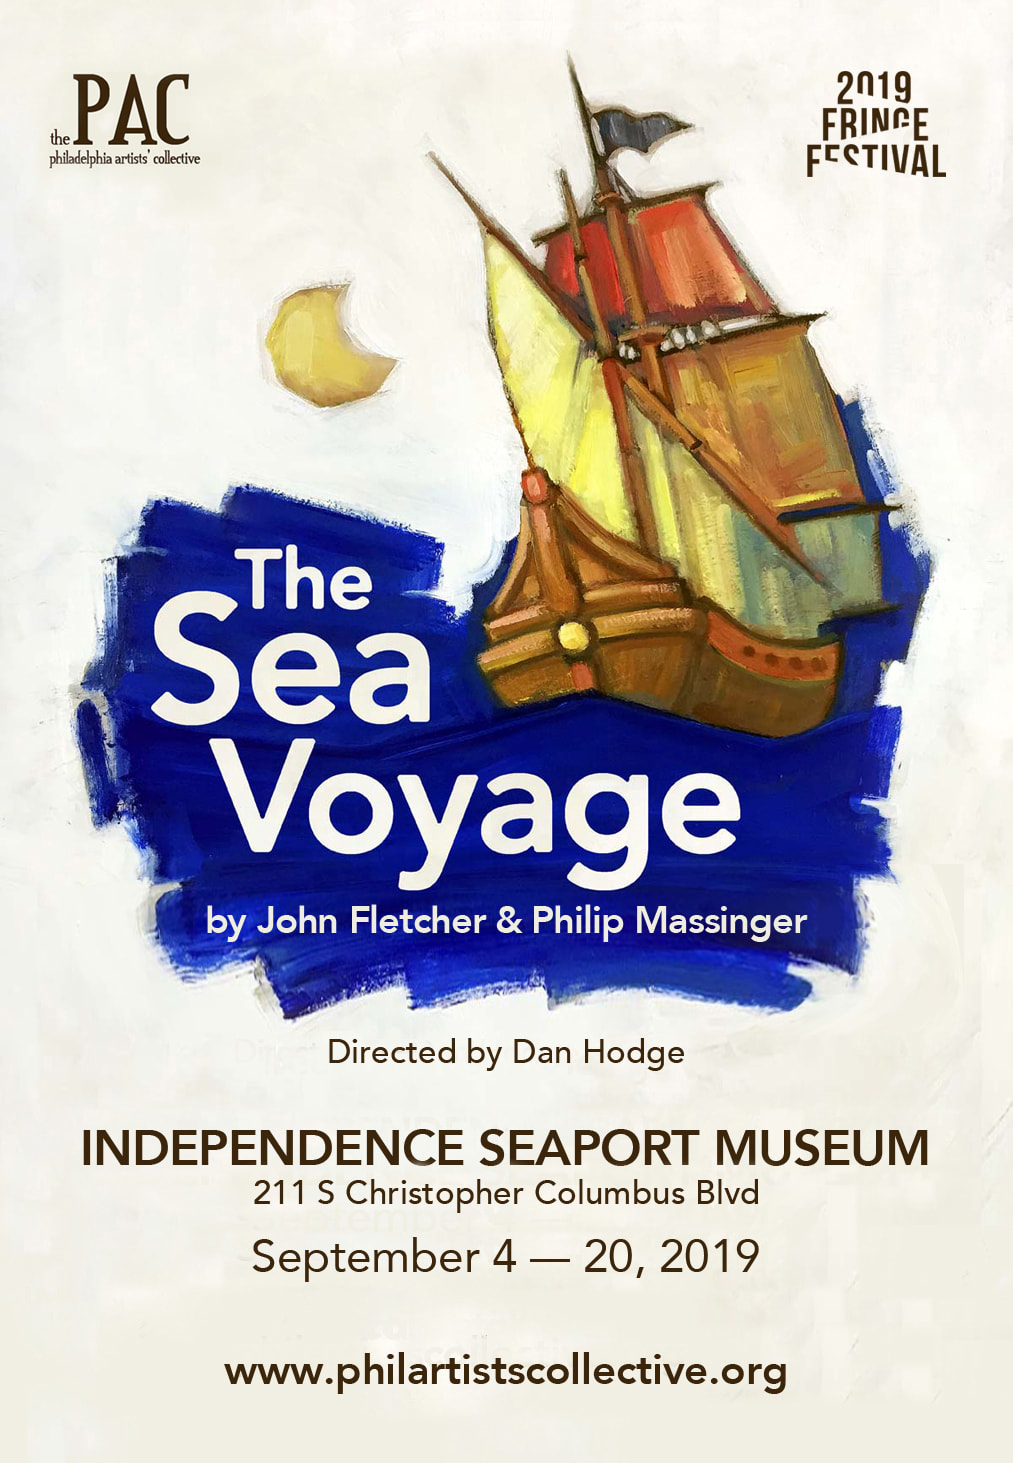 sea voyage description